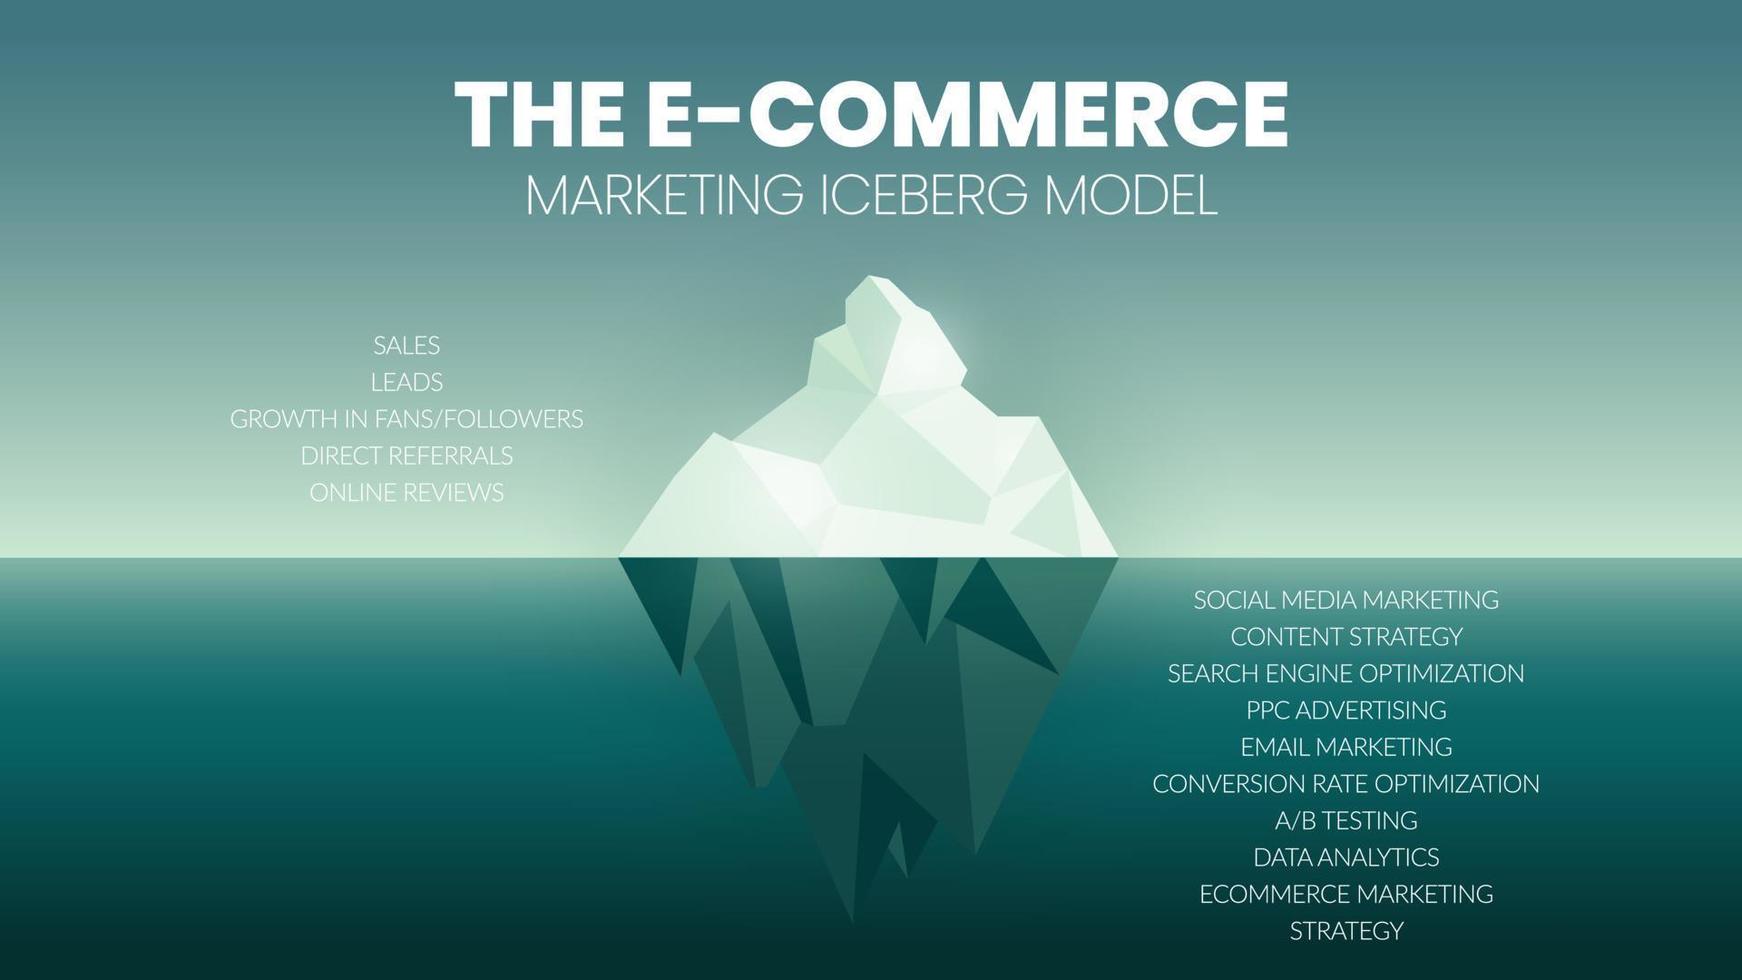 un'infografica vettoriale di un concetto di modello di iceberg di e-commerce ha vendite, lead, fan e follower in crescita, referral diretti e recensioni online. il sottomarino ha contenuti e social media marketing